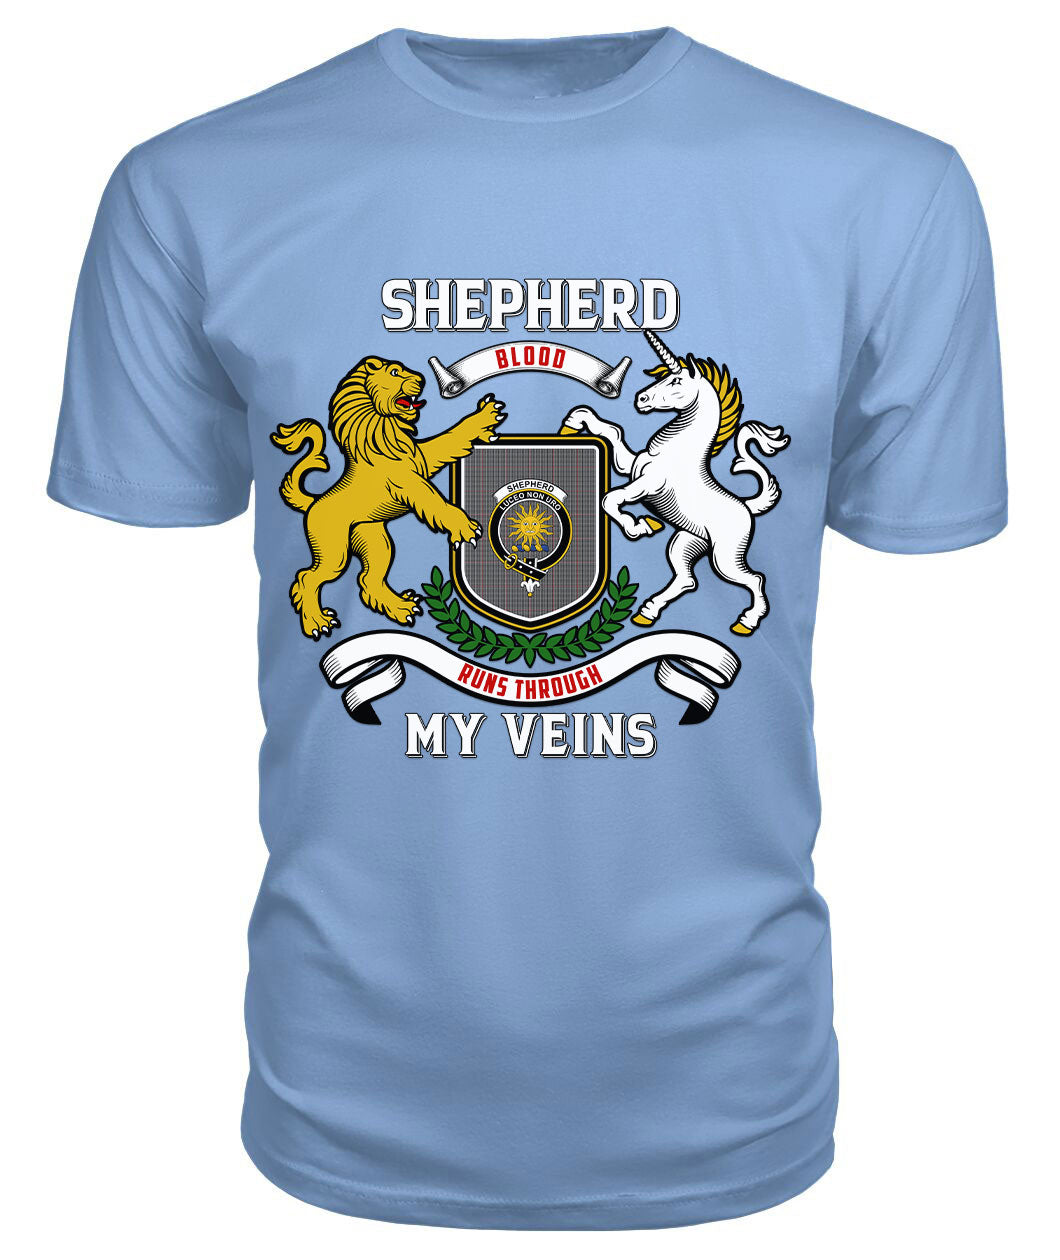 Shepherd Tartan Crest 2D T-shirt - Blood Runs Through My Veins Style